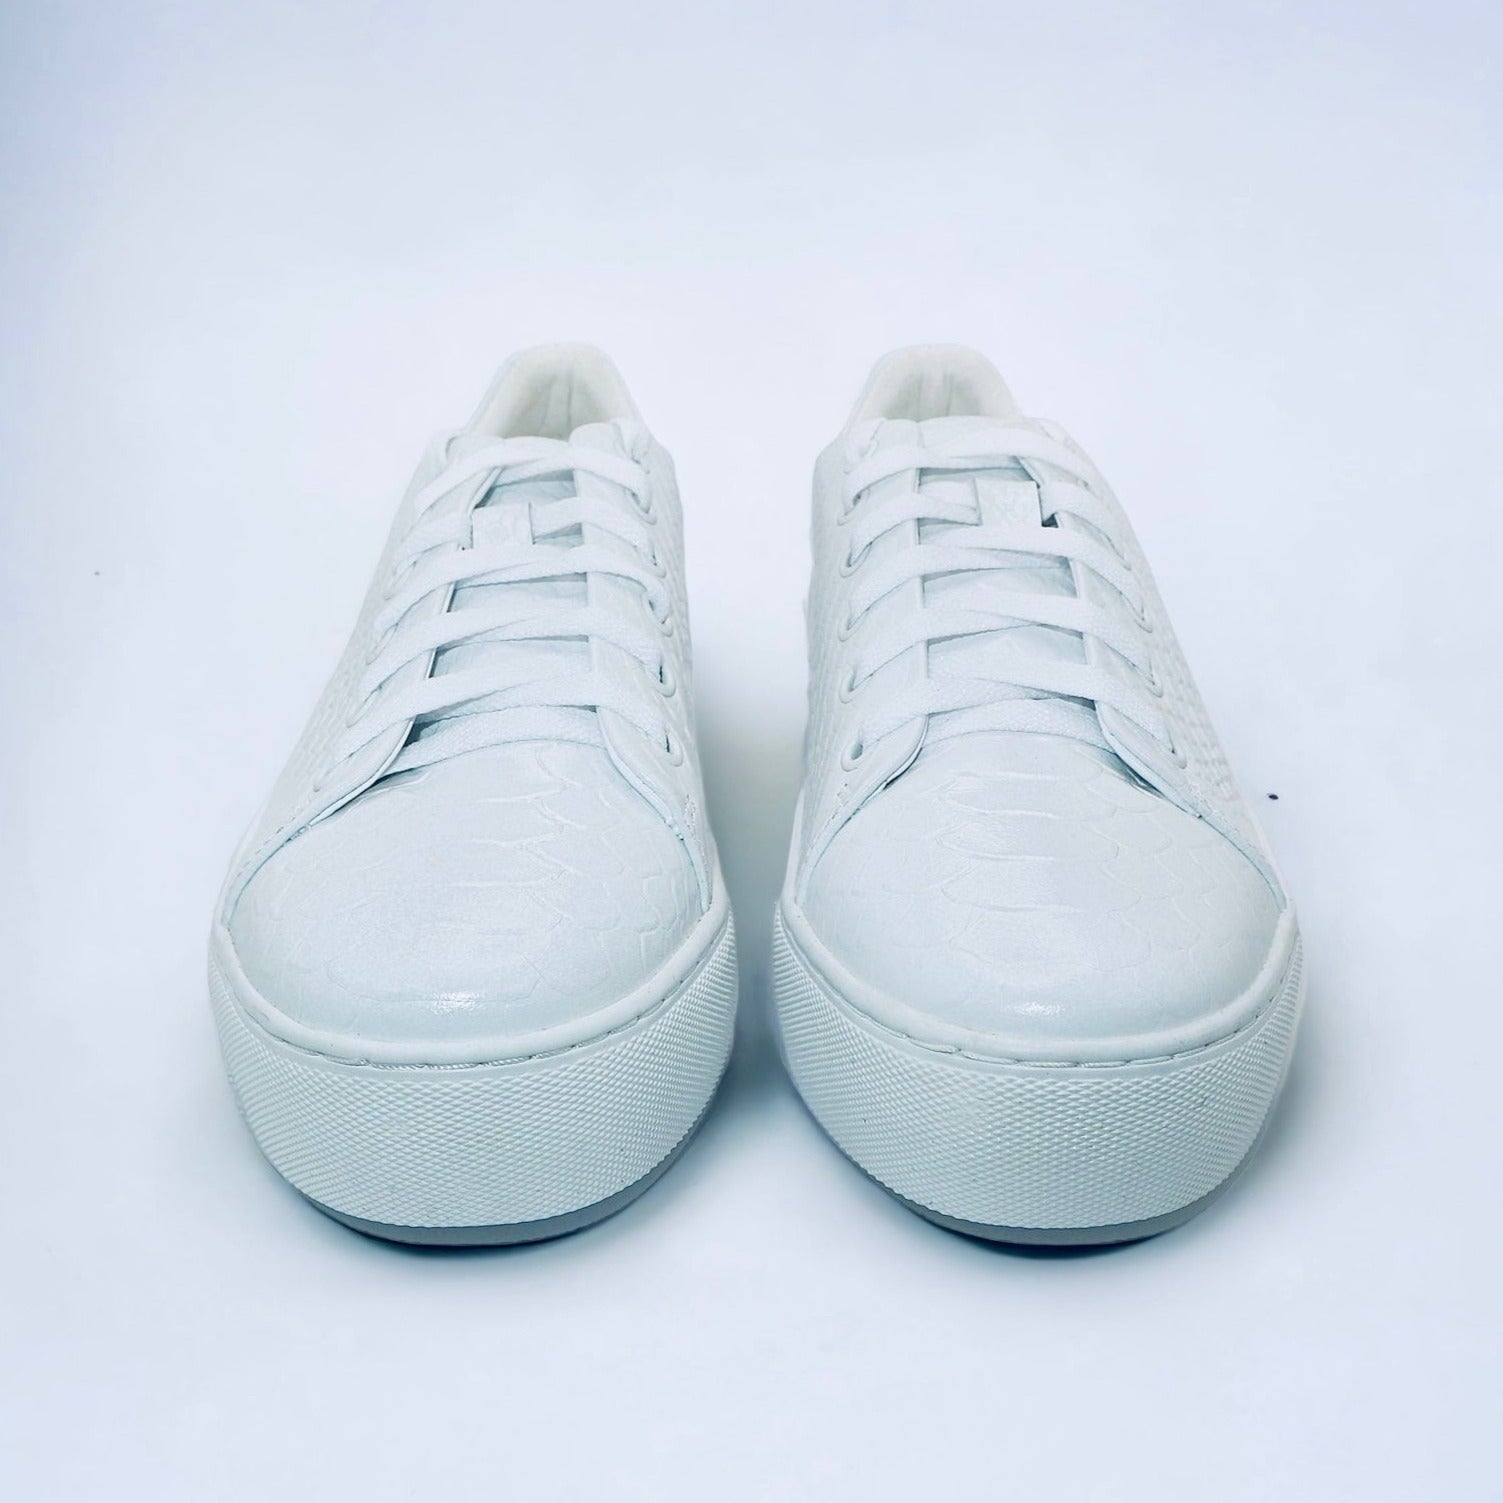 Amare for sneakers V white | the Best Girls Michaela